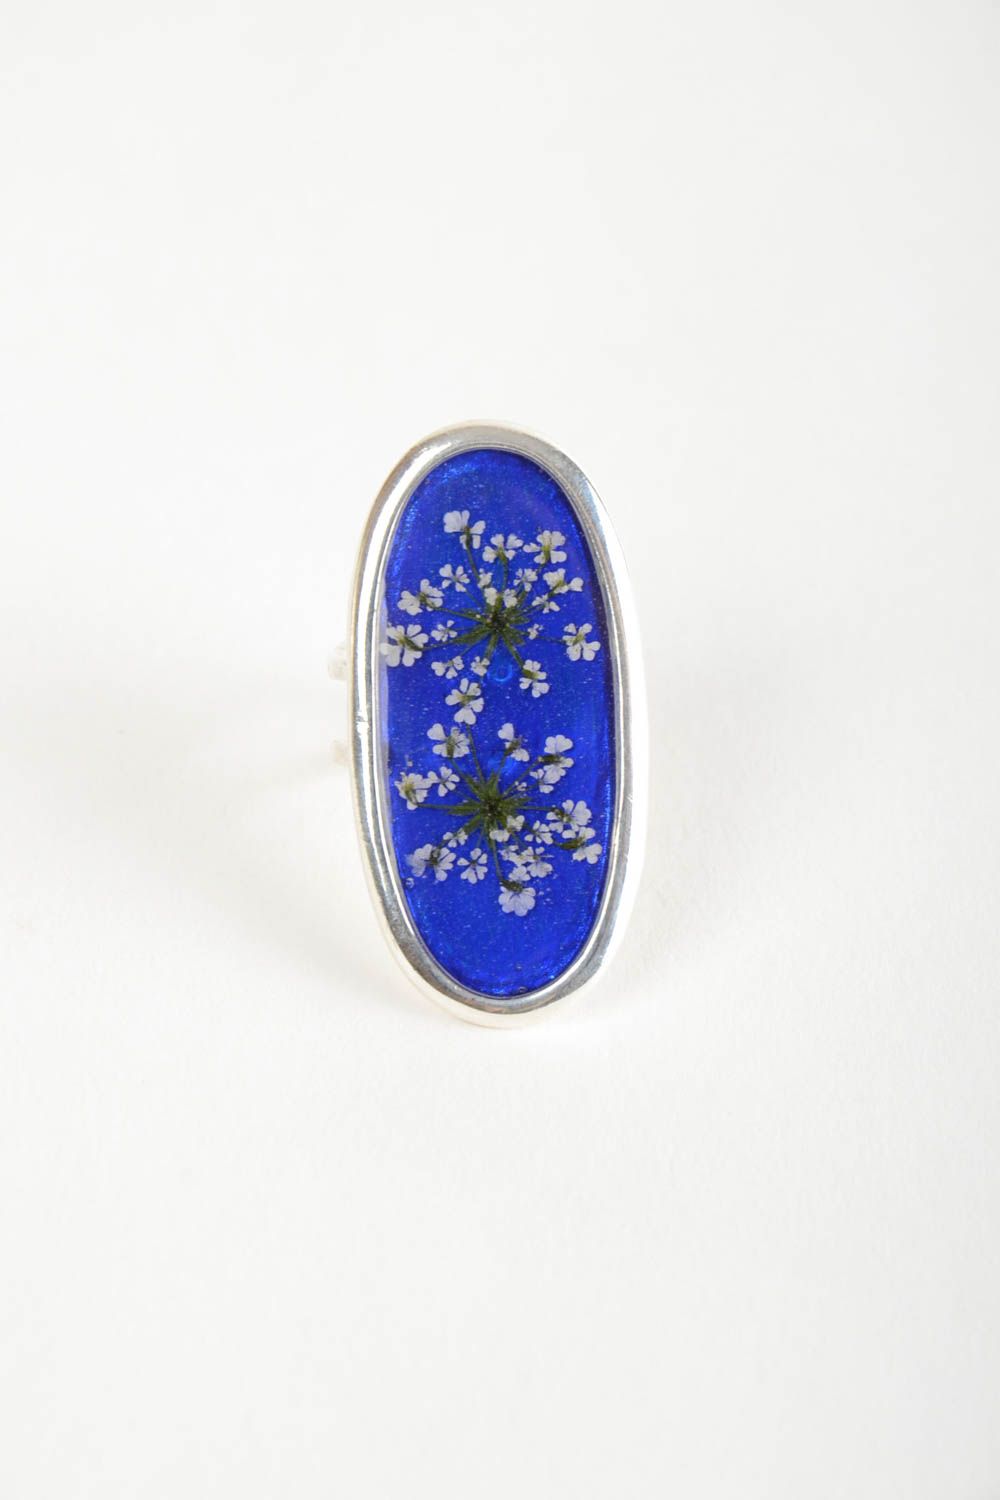 Кольцо с сухоцветами в эпоксидной смоле голубое массивное ручной работы фото 4